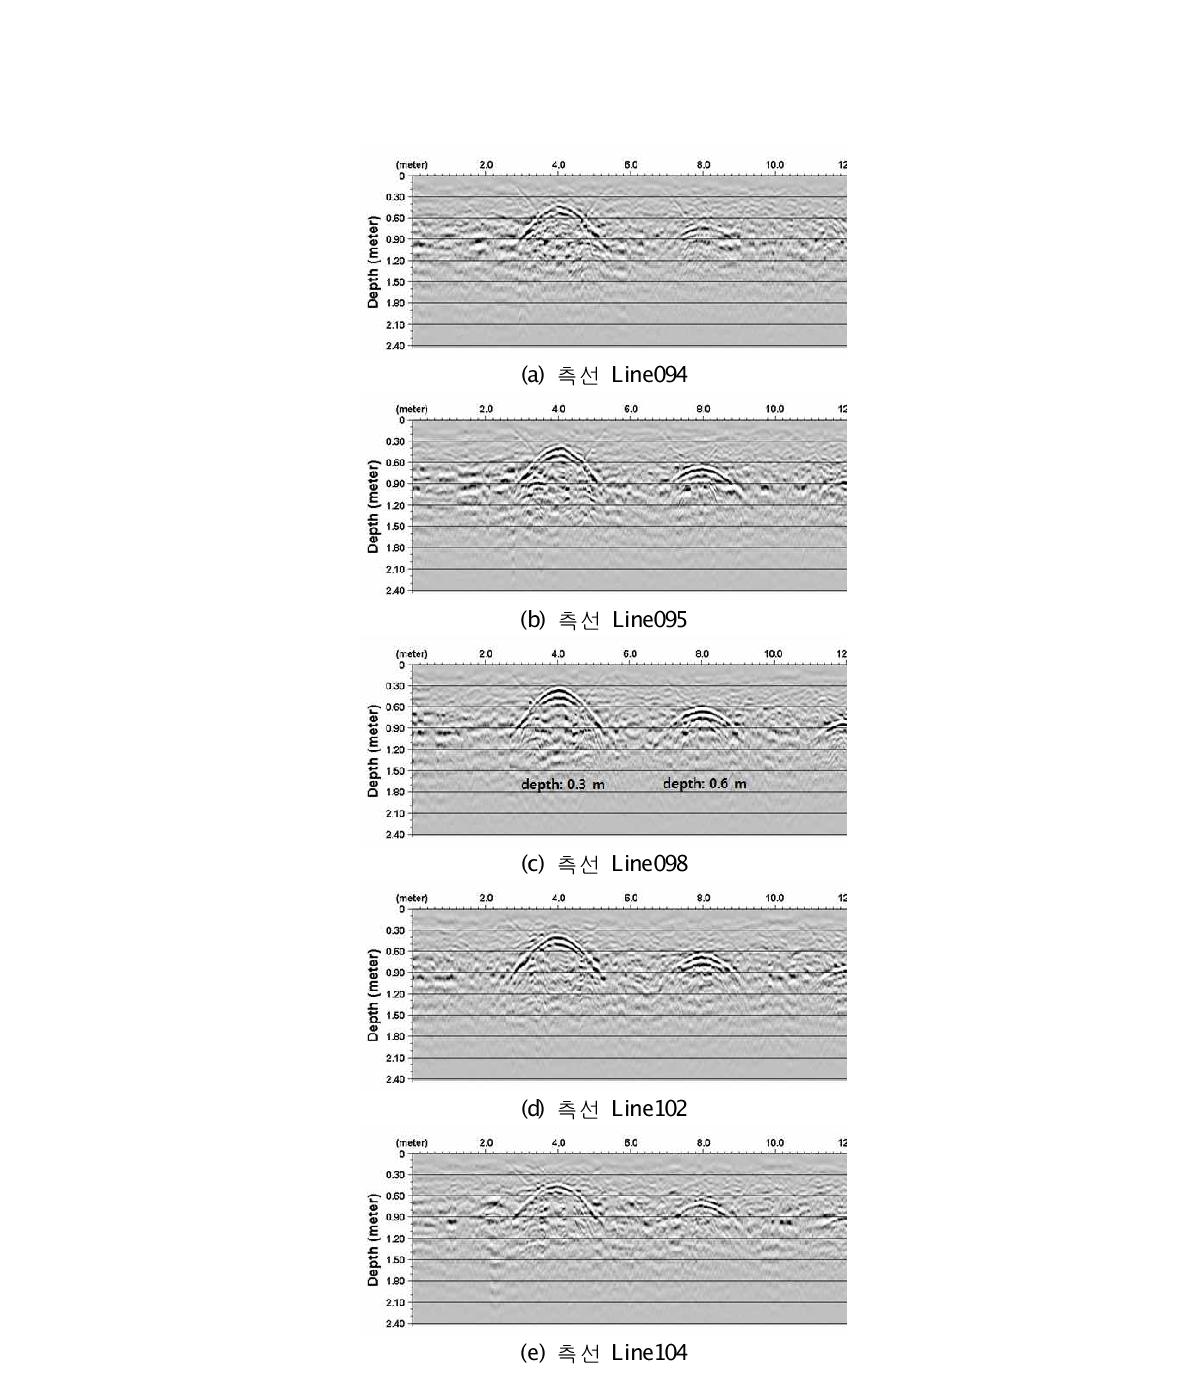 SP 부지 측선 Line098 지역 하부에 위치한 돔 구조의 공동(공동지름 1.0 m) 상부 위치별 포물선 정점의 다른 심도를 보여주는 2차원 GPR 자료